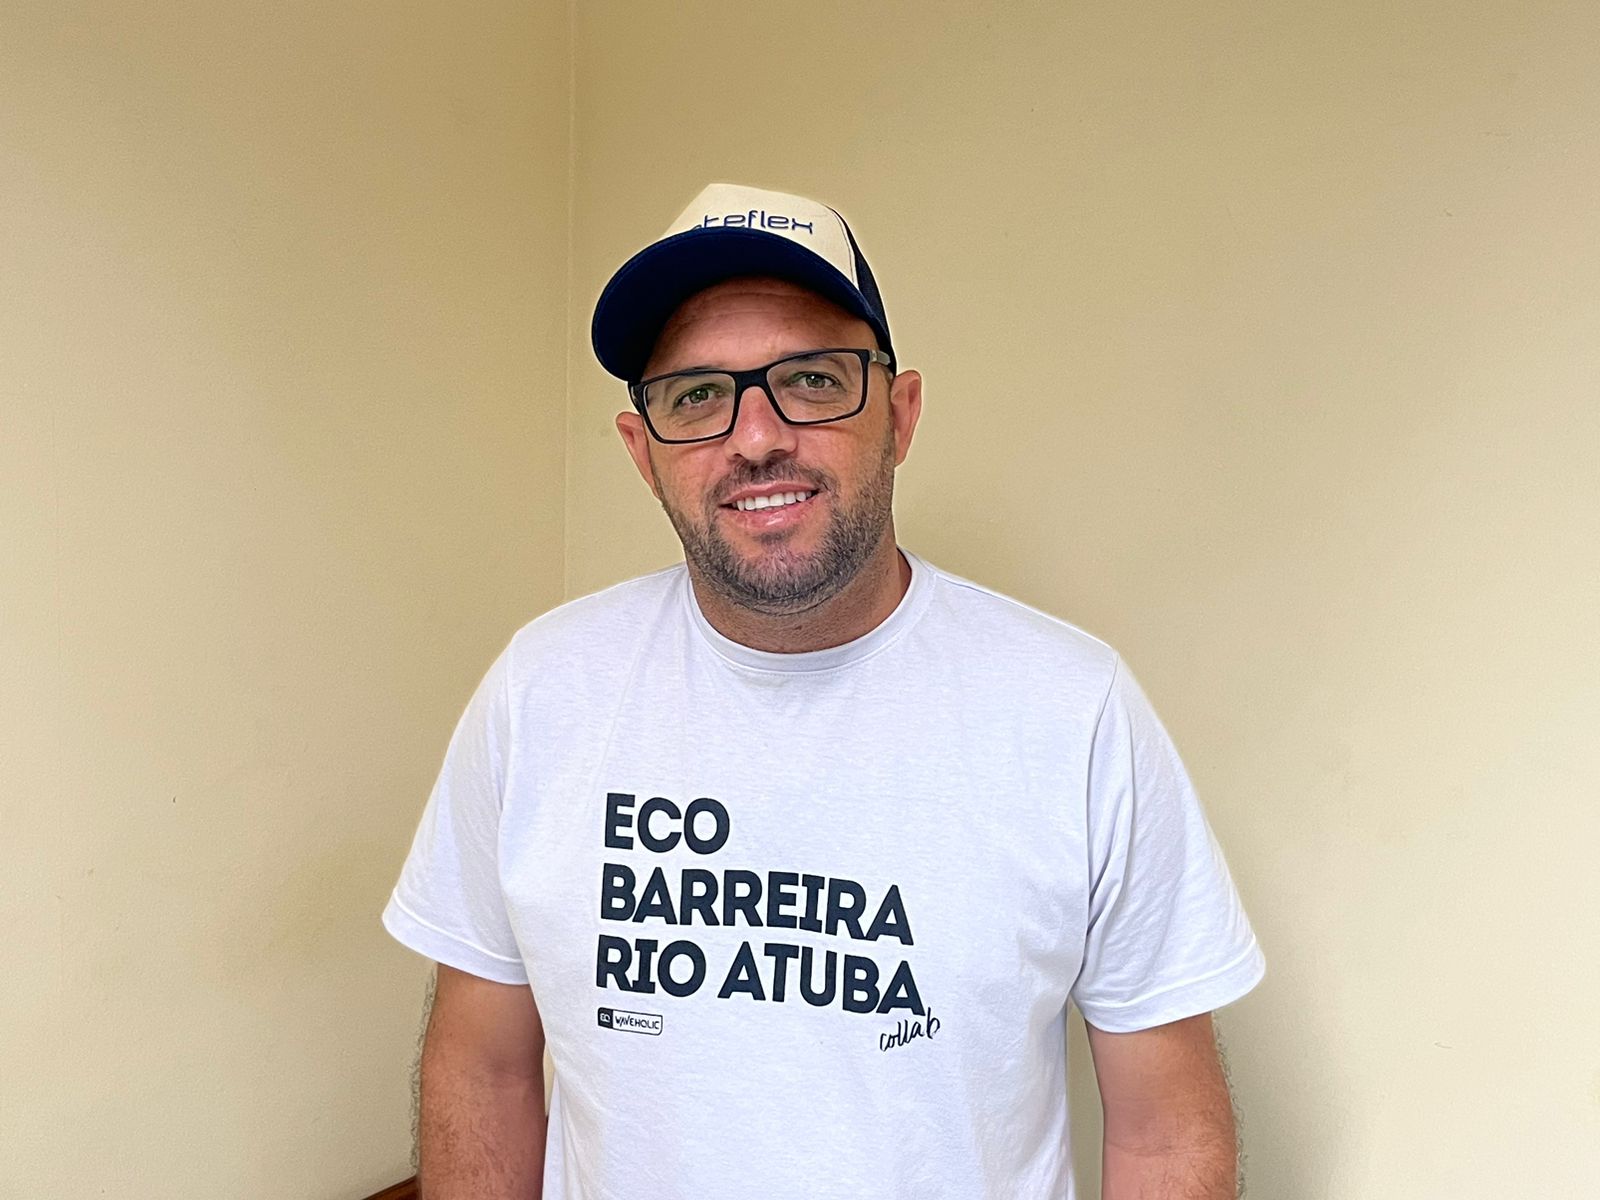 Ativista ambiental promove preservação dos rios com criação de ecobarreiras